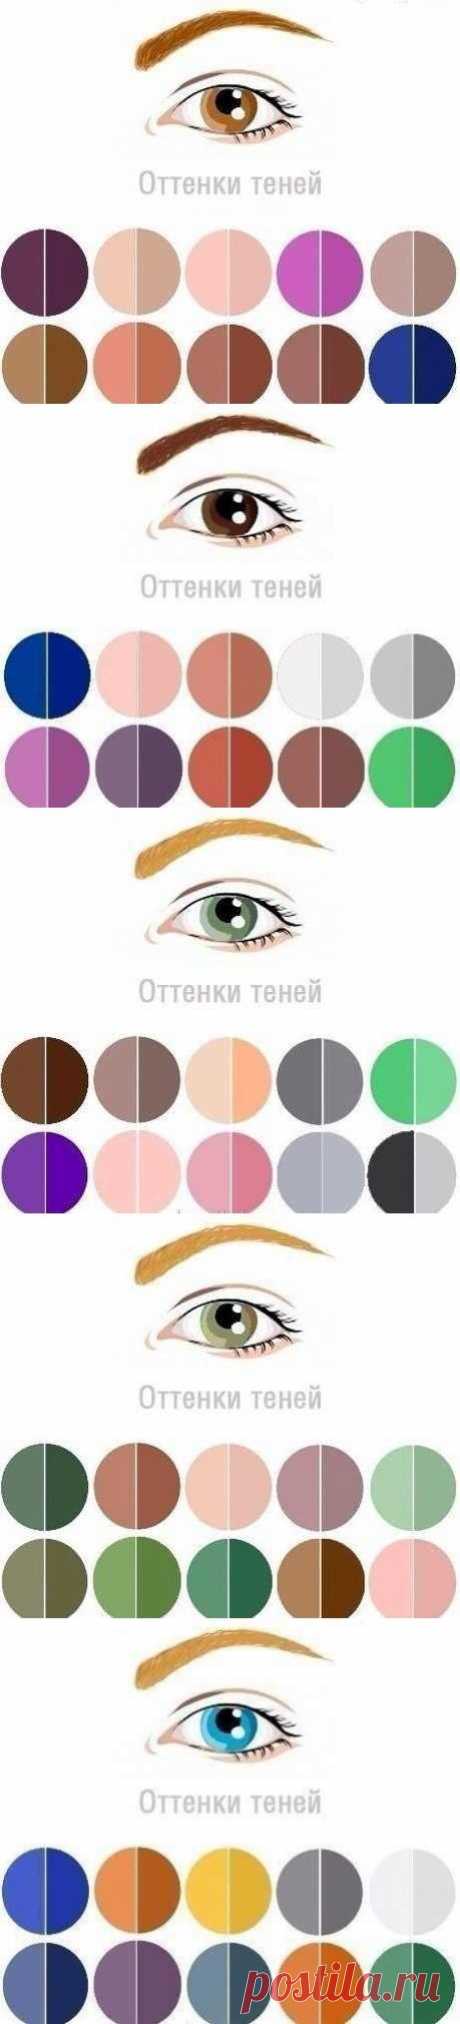 Оттенки теней под Ваш цвет глаз: | Женский журнал